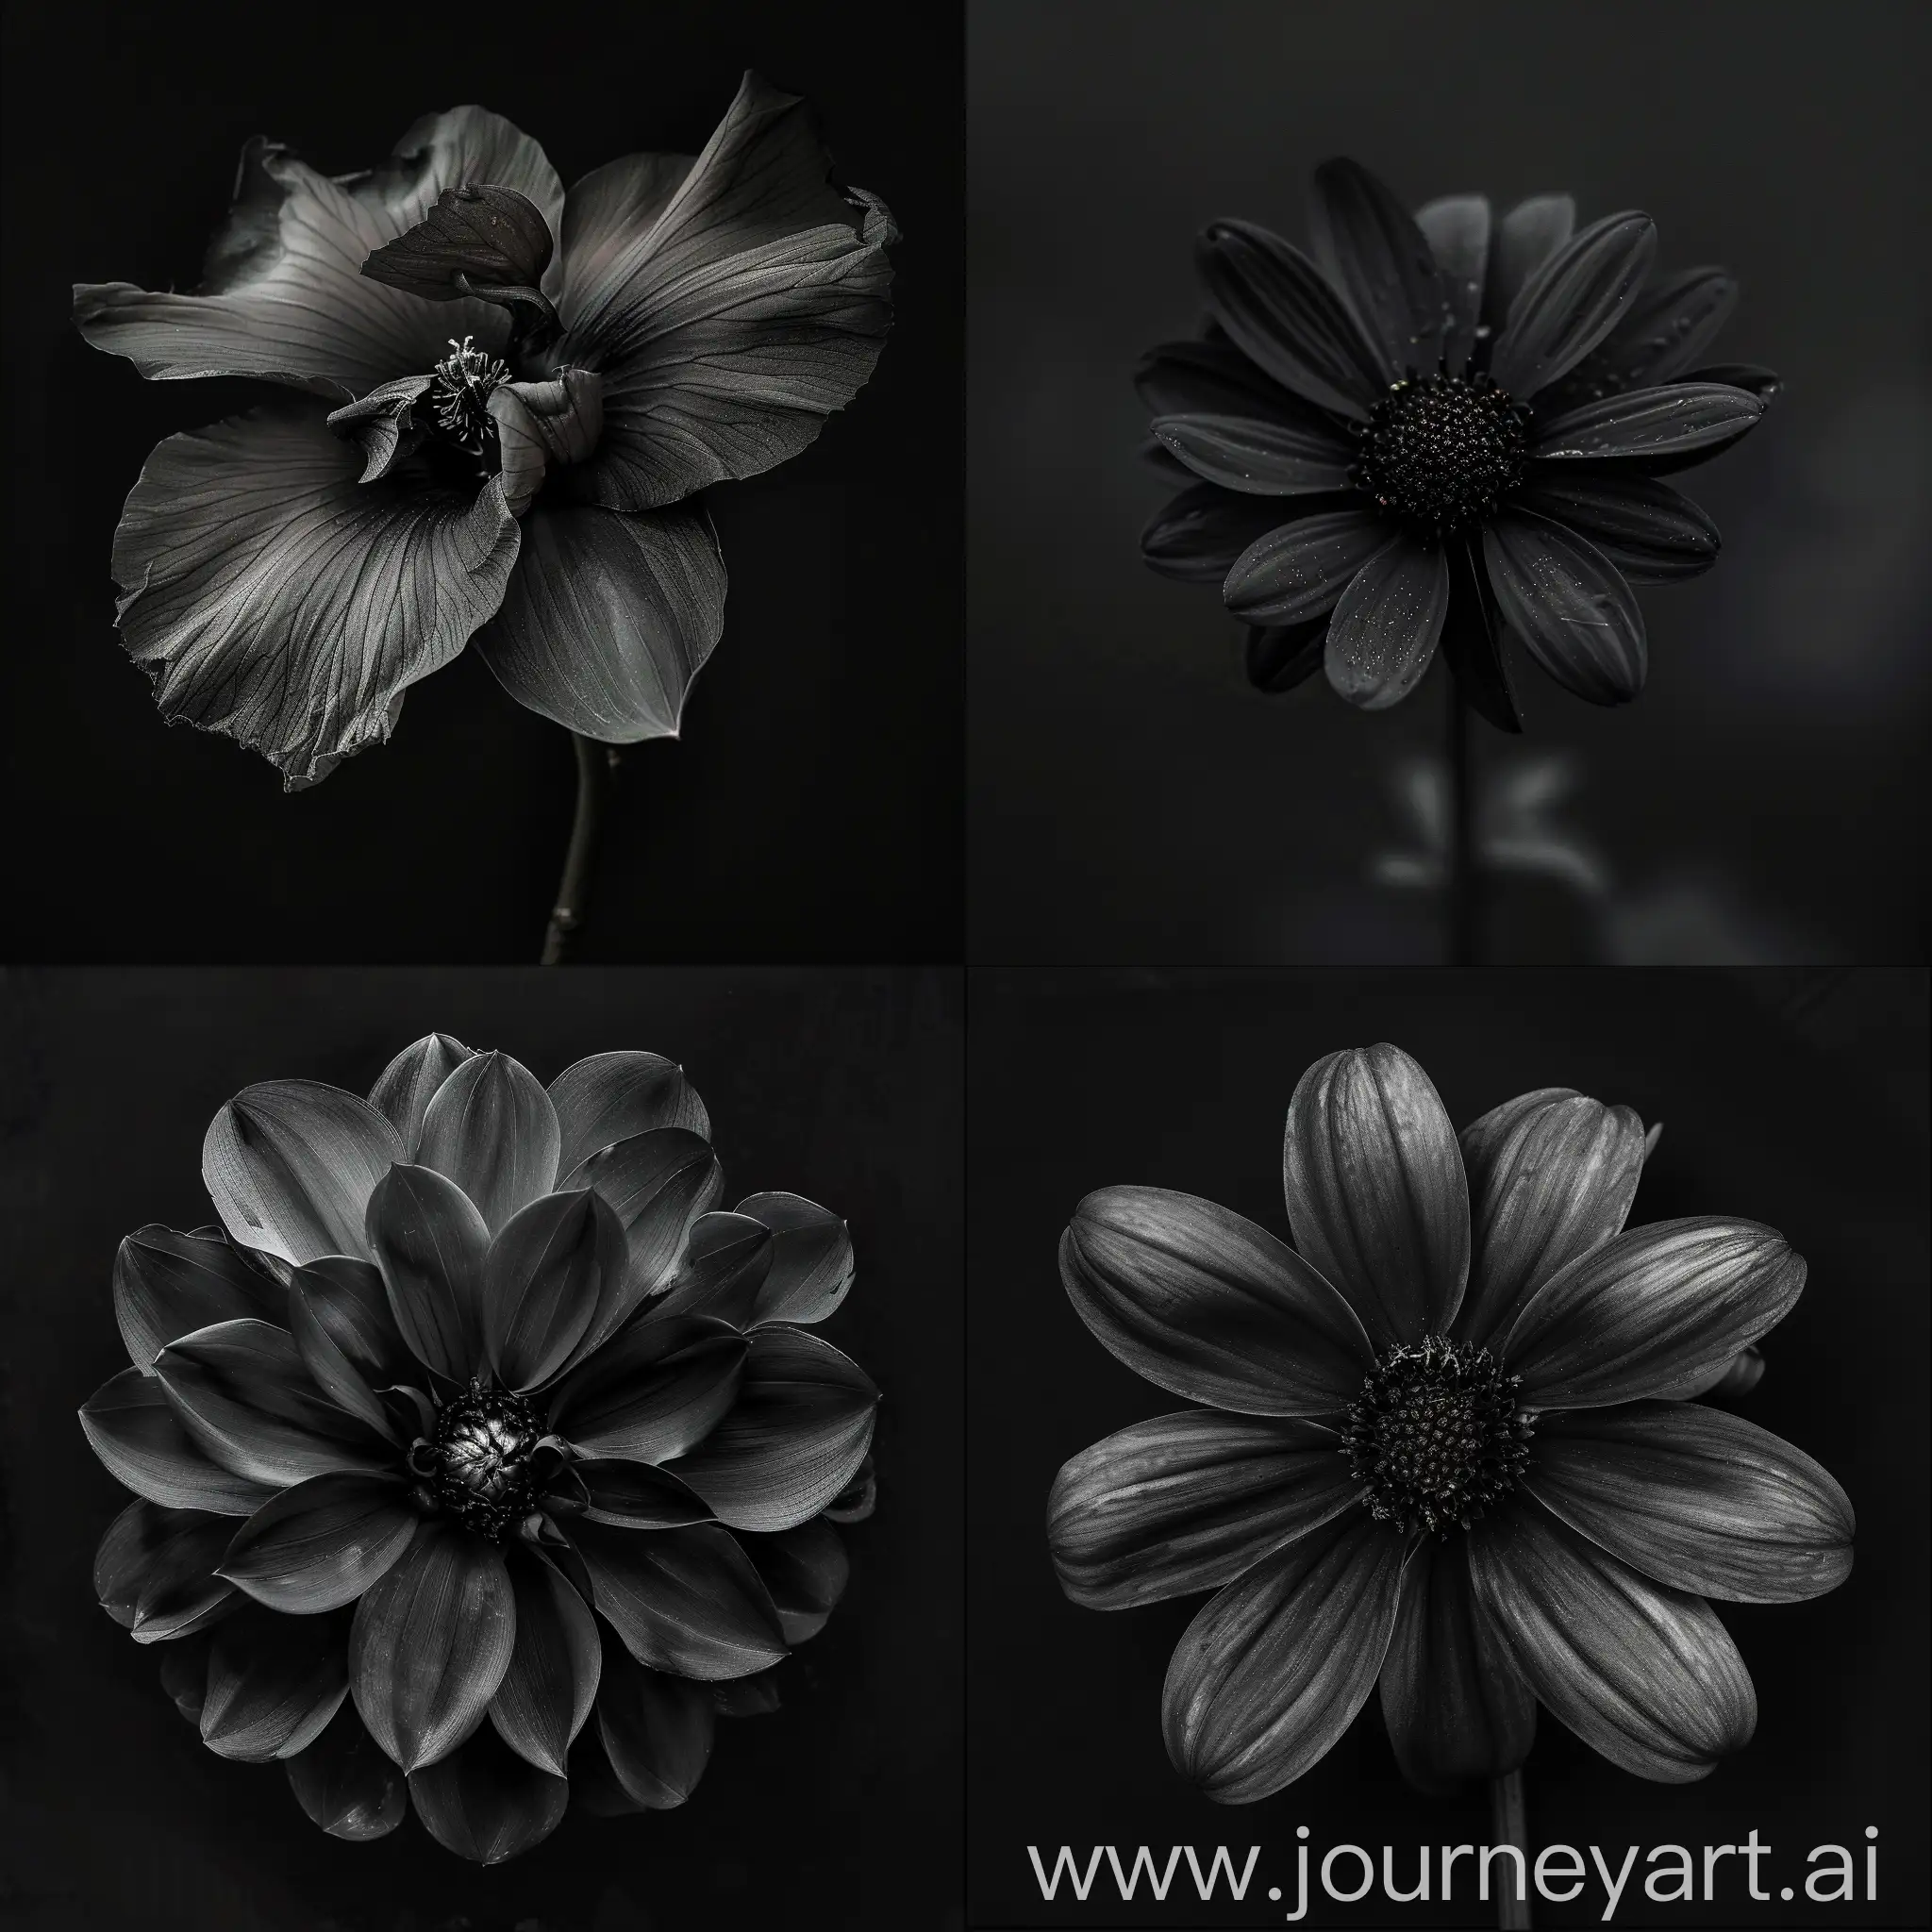 A flower in black